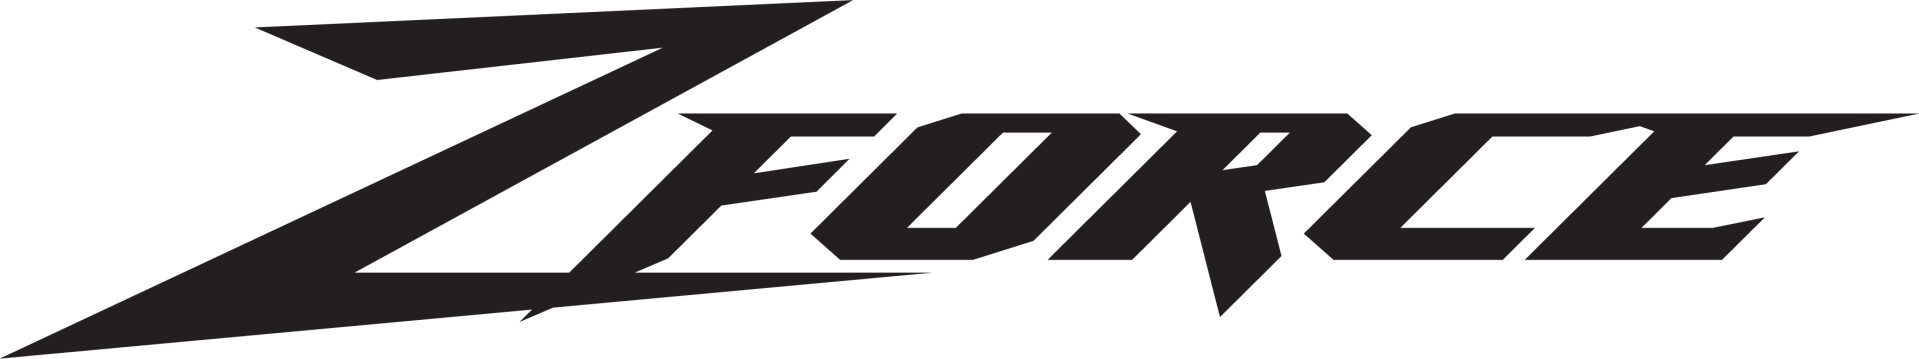 ZFORCE 950 Sport Logo